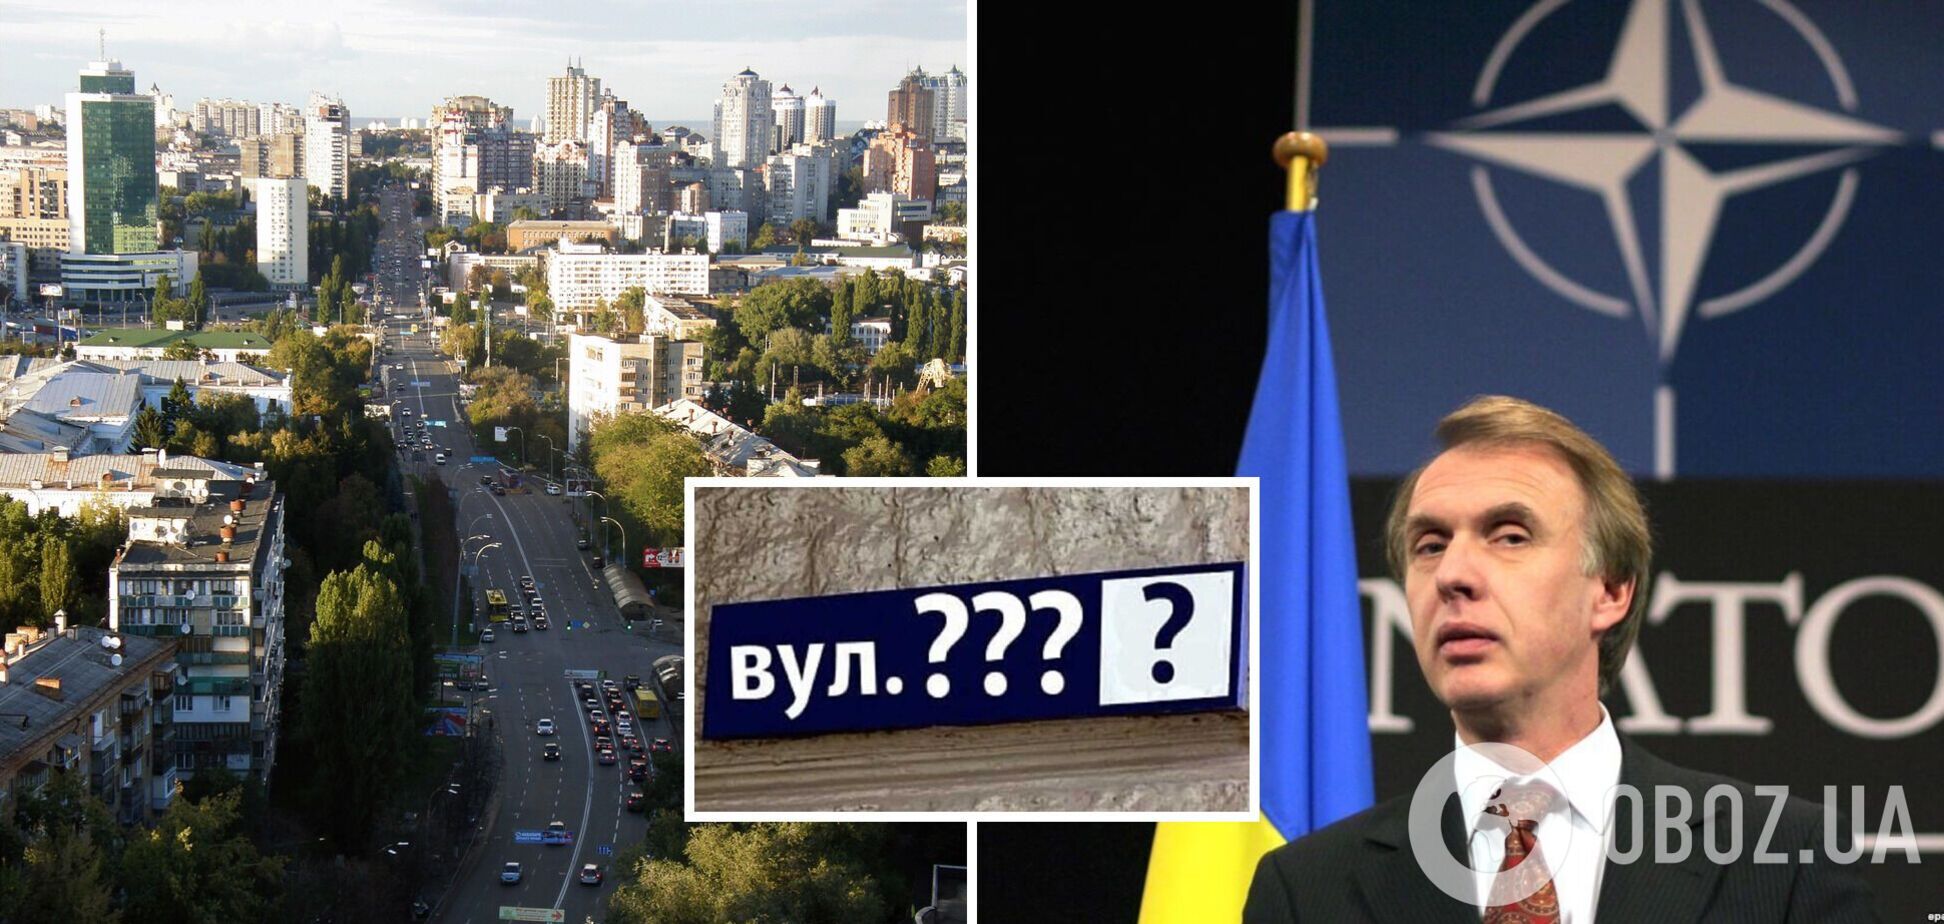 Повітрофлотський проспект у Києві закликали перейменувати на проспект Євросоюзу